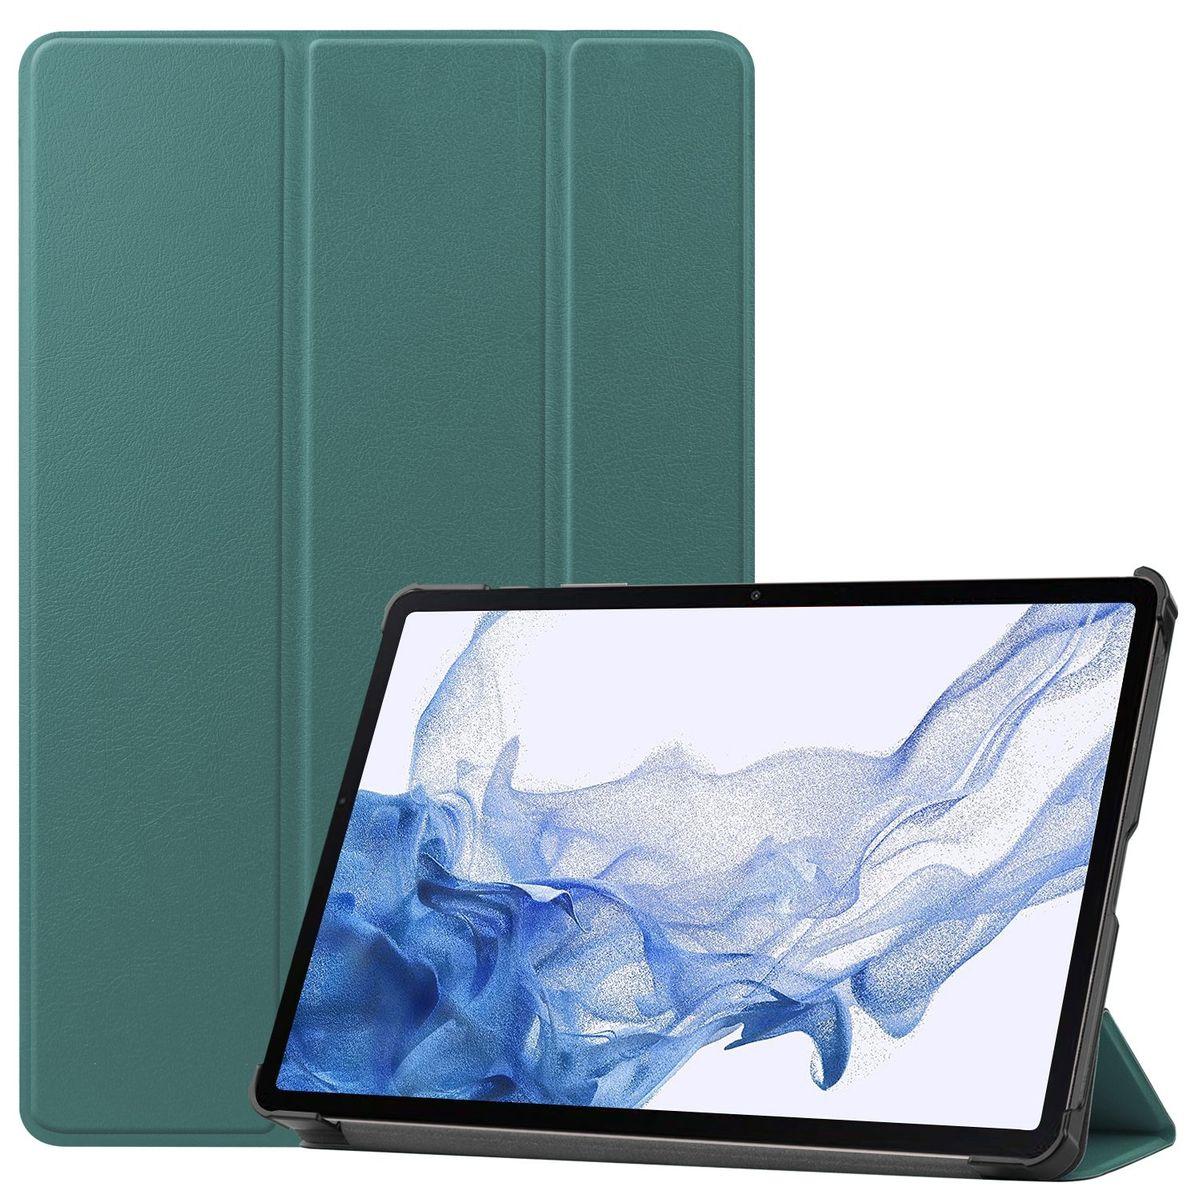 WIGENTO 3folt / für Wake aufstellbar Sleep Samsung Smart Kunstleder, Silikon / Cover Dunkelgrün Kunststoff Cover UP Tablethülle Full 